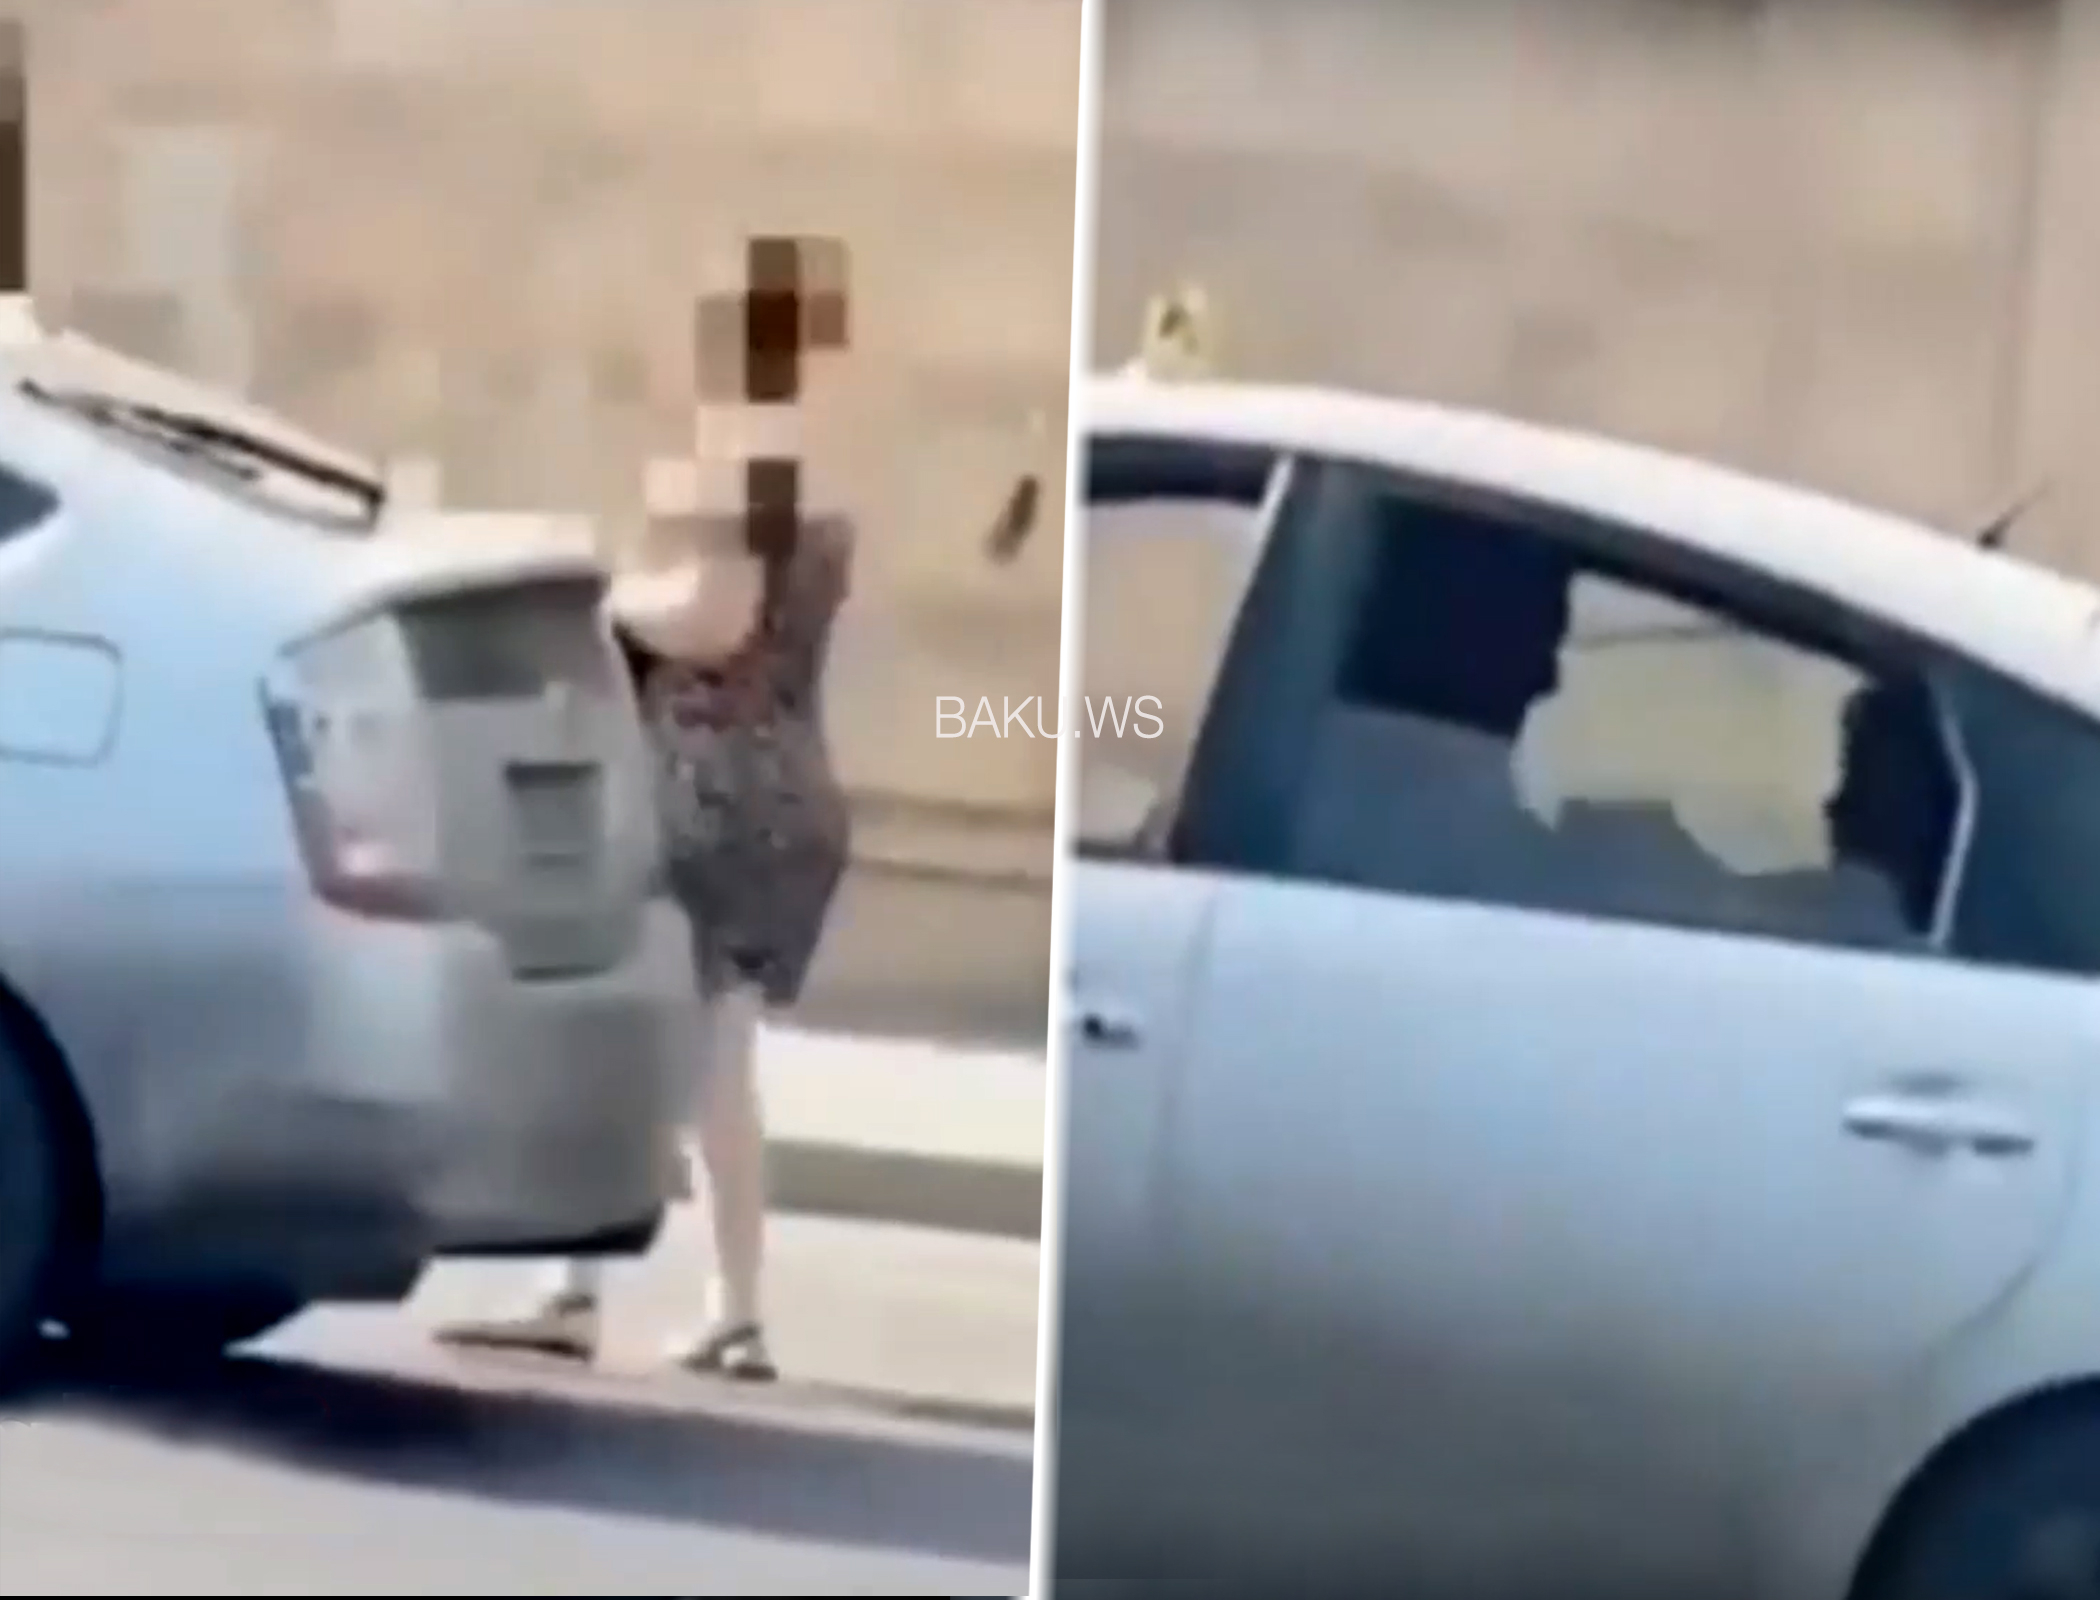 Bakıda “Prius” sürücüsündən qadın sərnişinə qarşı zorakılıq - VİDEO